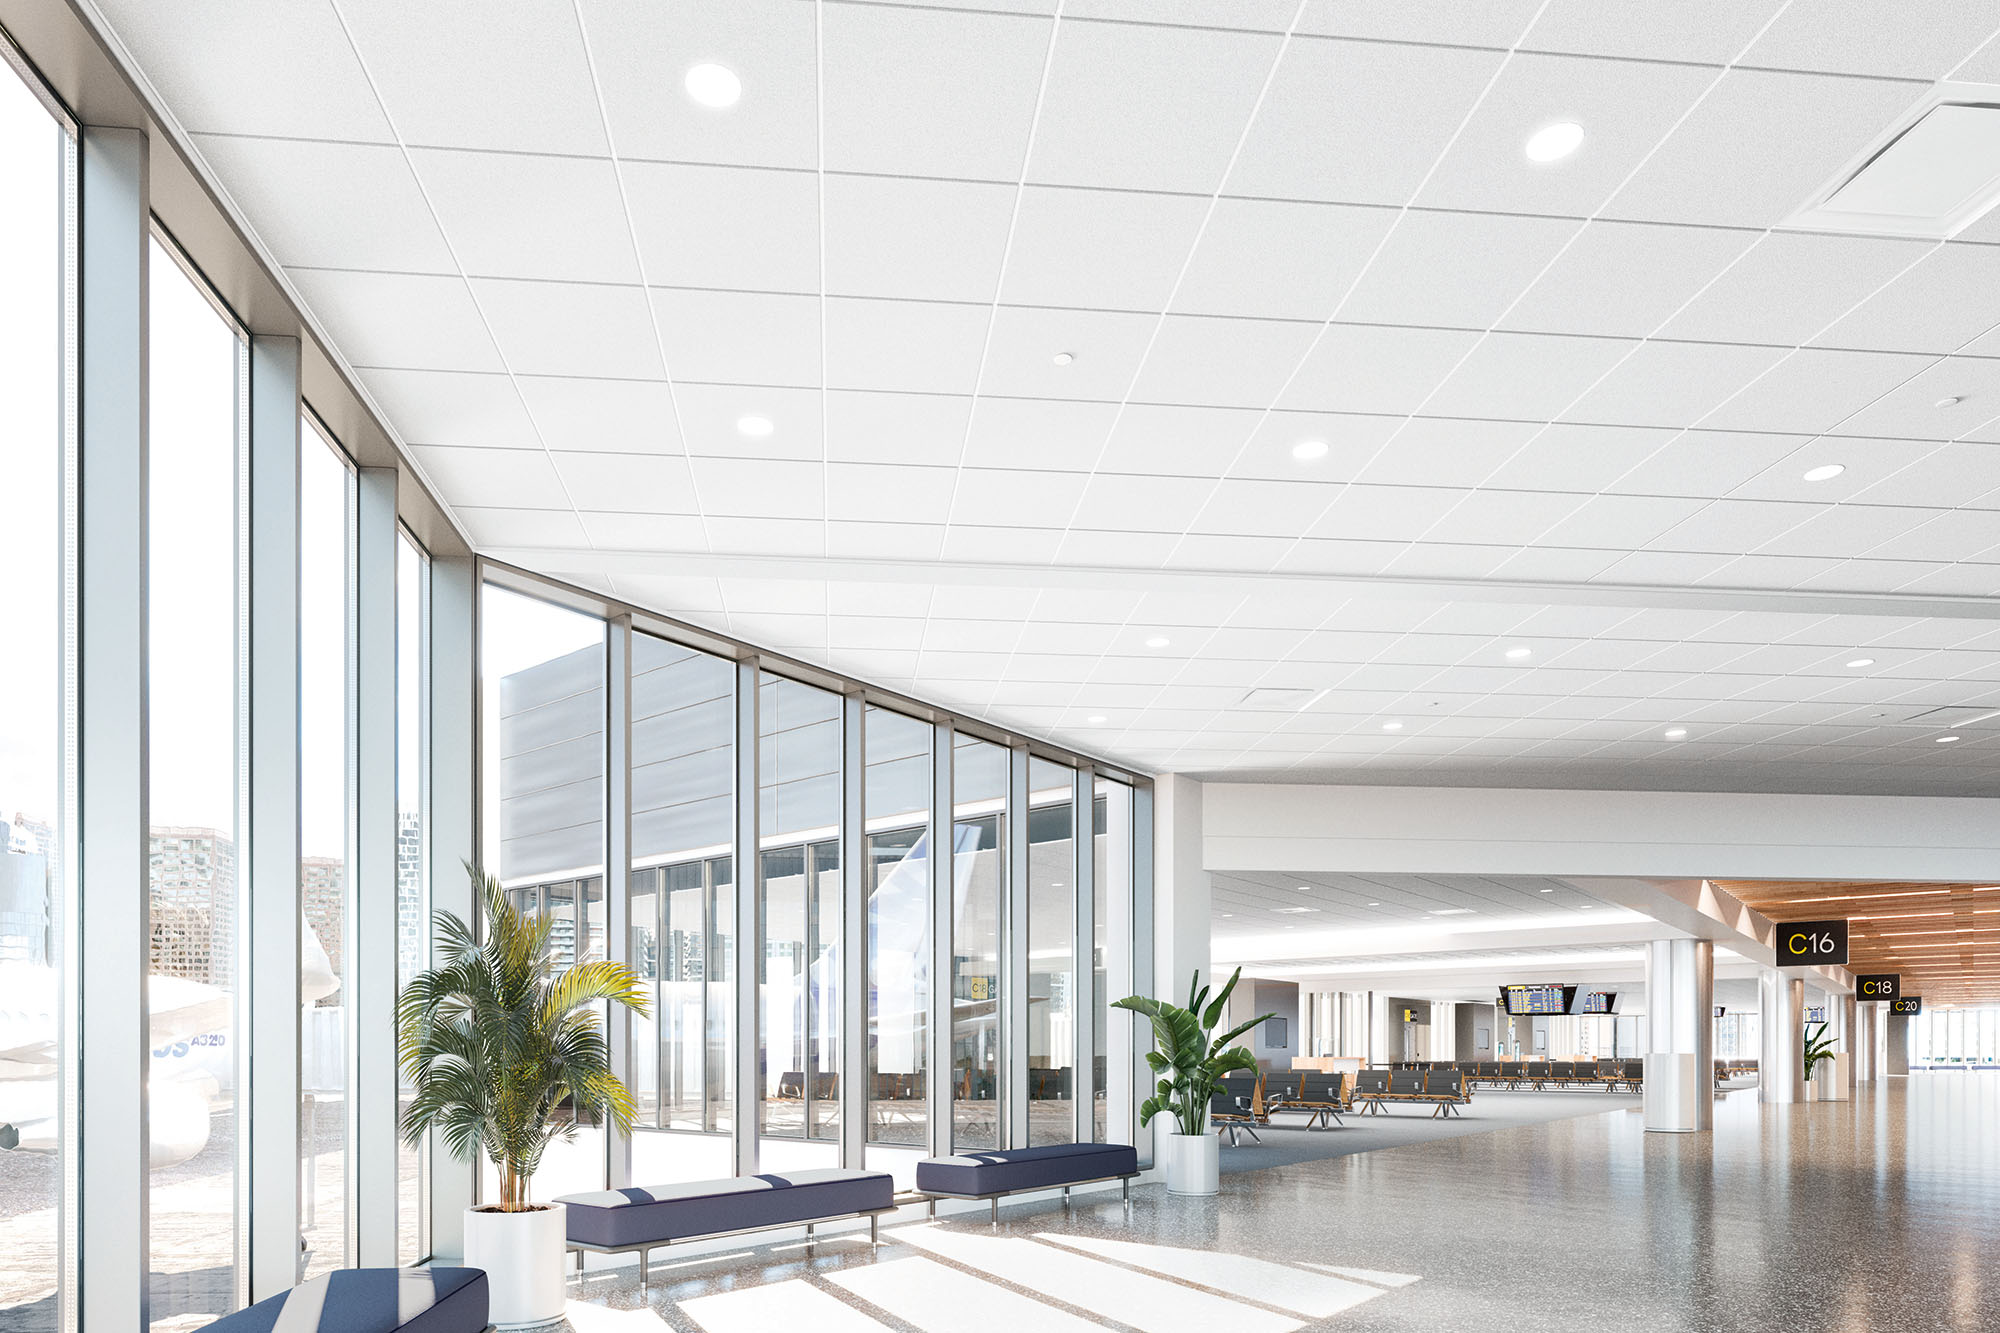 Templok Energy Saving Ceilings at airport